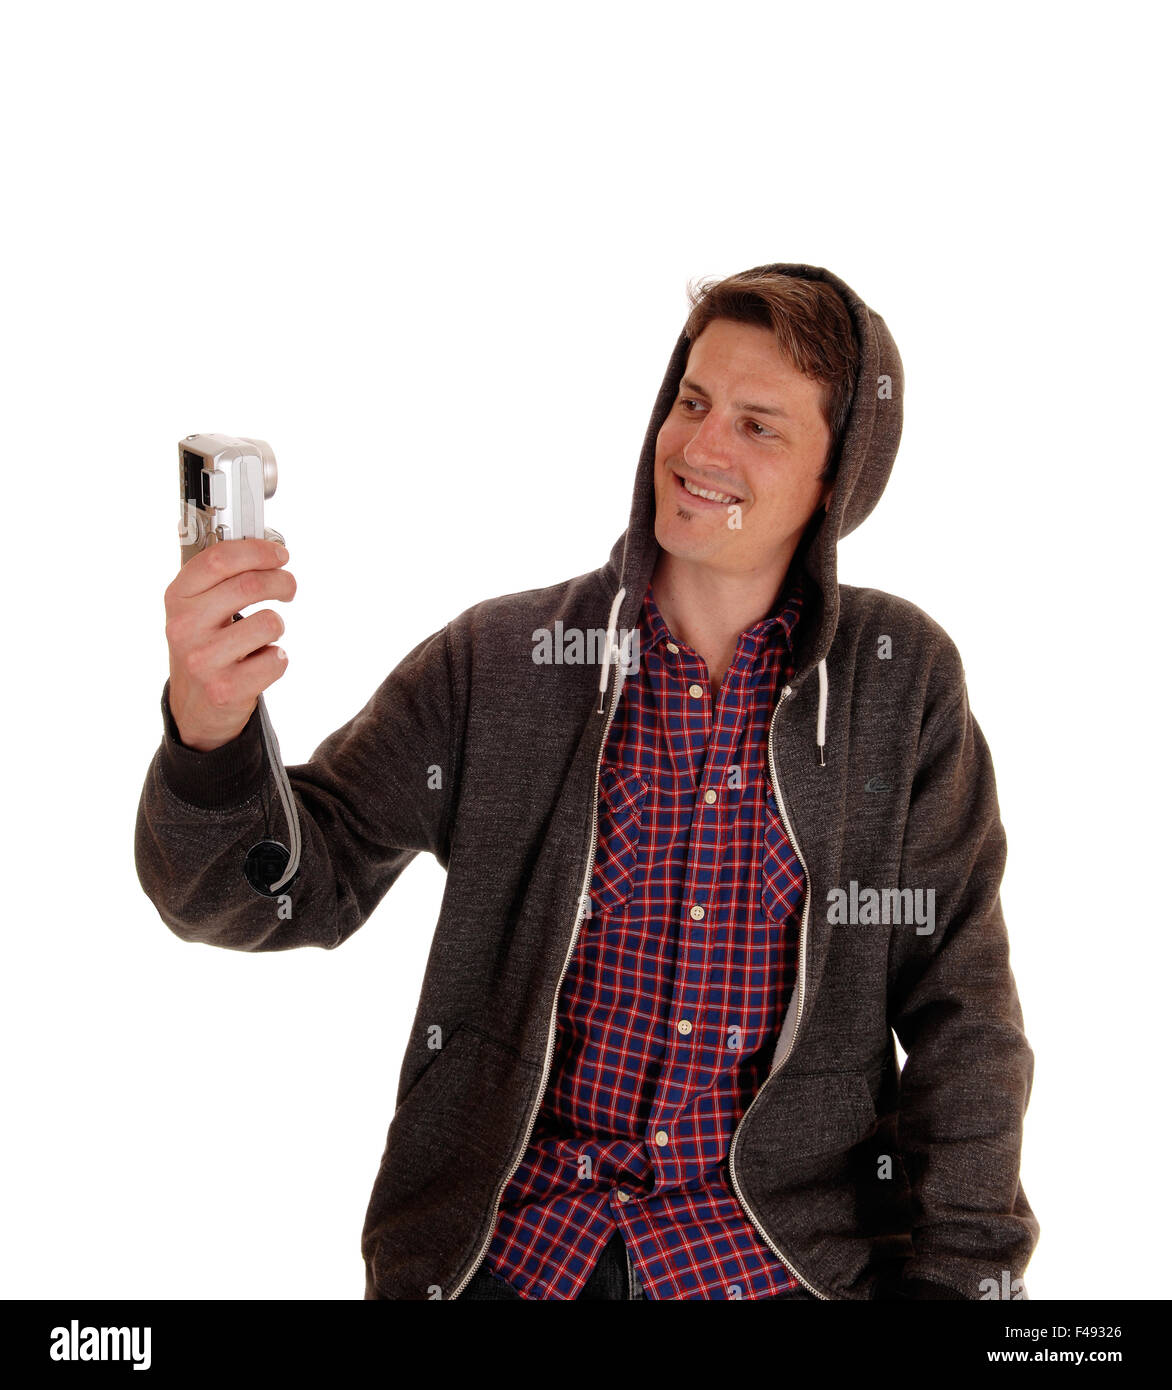 Mann in hoody nehmen Selfie. Stockfoto